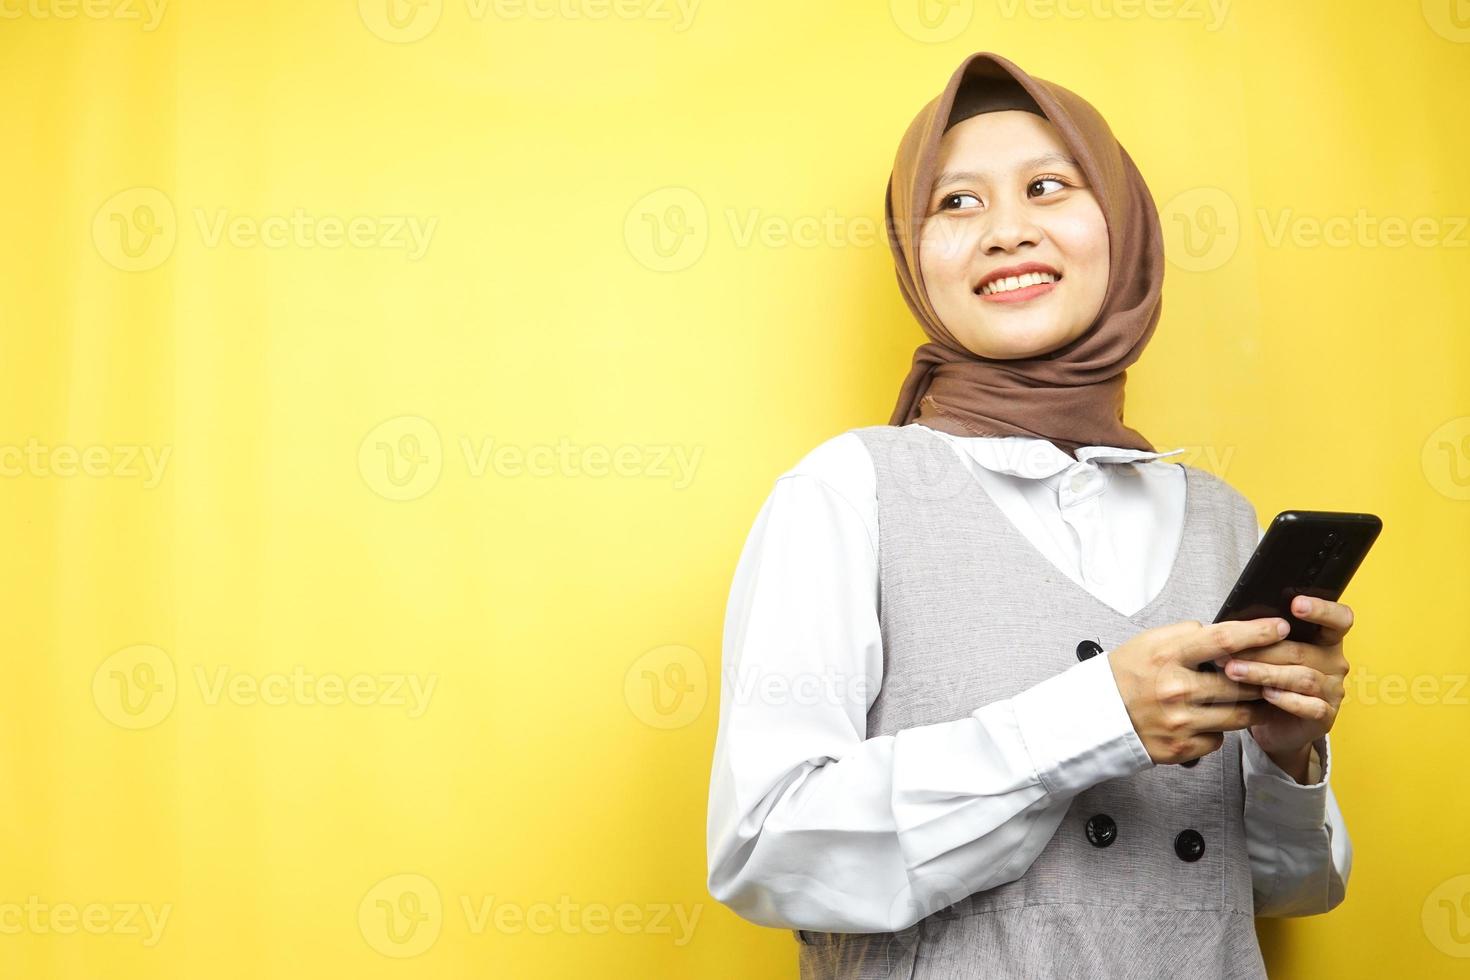 bella giovane donna musulmana asiatica sorridente sicura di sé, entusiasta e allegra con le mani che tengono lo smartphone, vista guardando lo spazio vuoto che presenta qualcosa, isolato su sfondo giallo foto